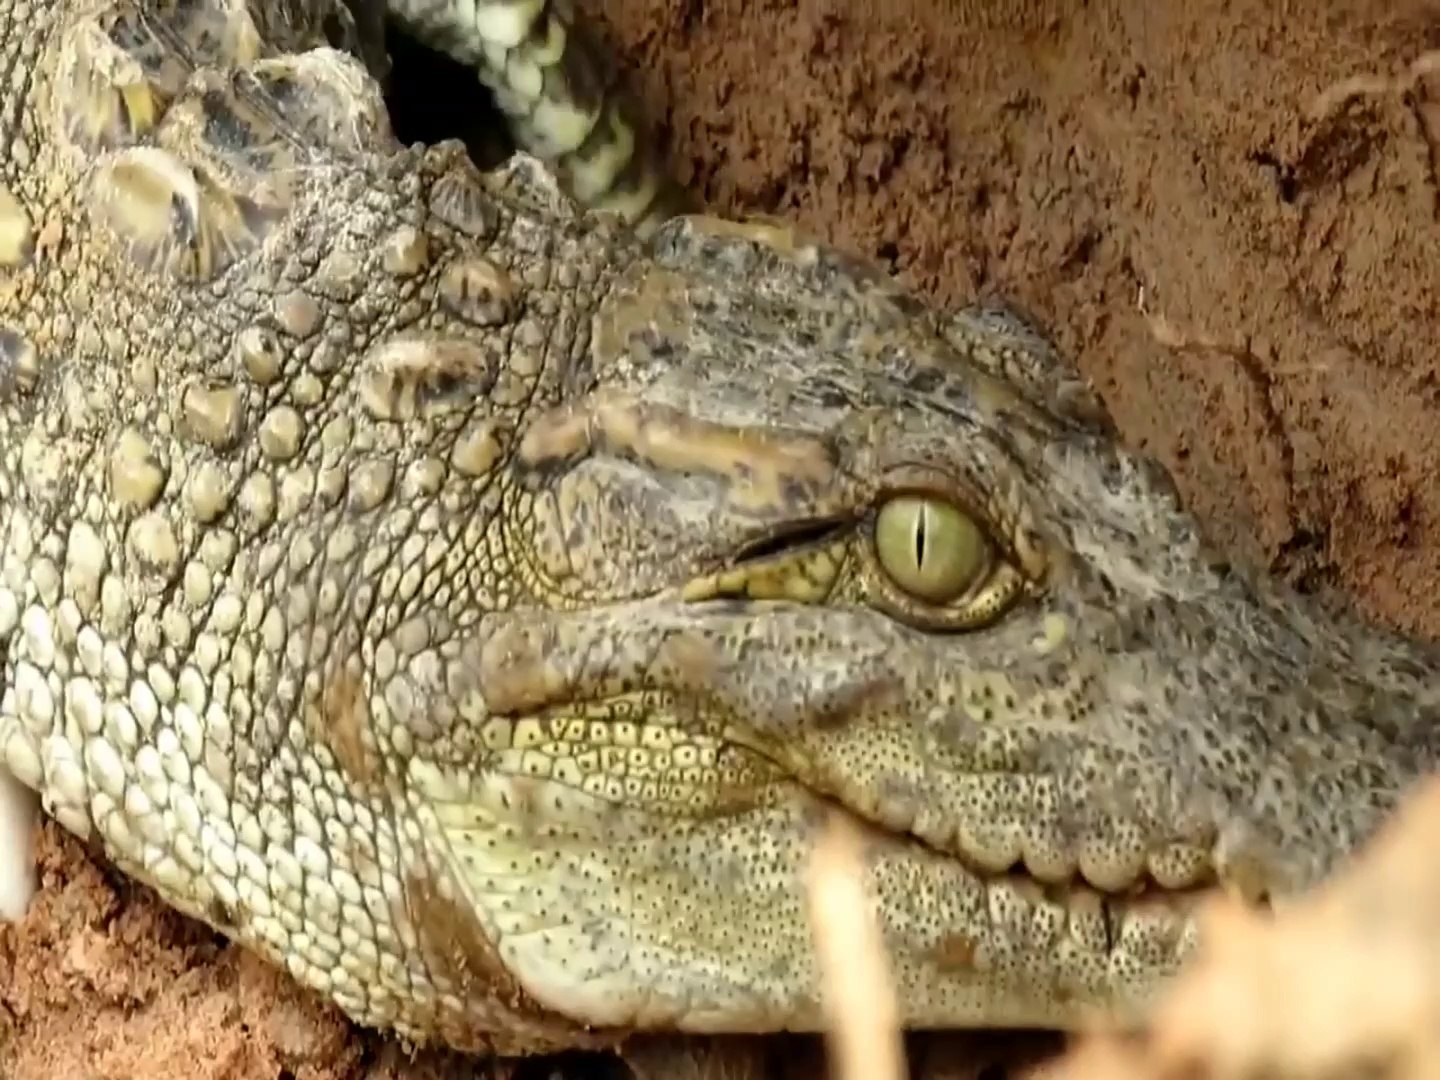 Crocodile Trap - Finding Crocodile Nest - Trap Crocodile In Underground Hole | Animal Trap